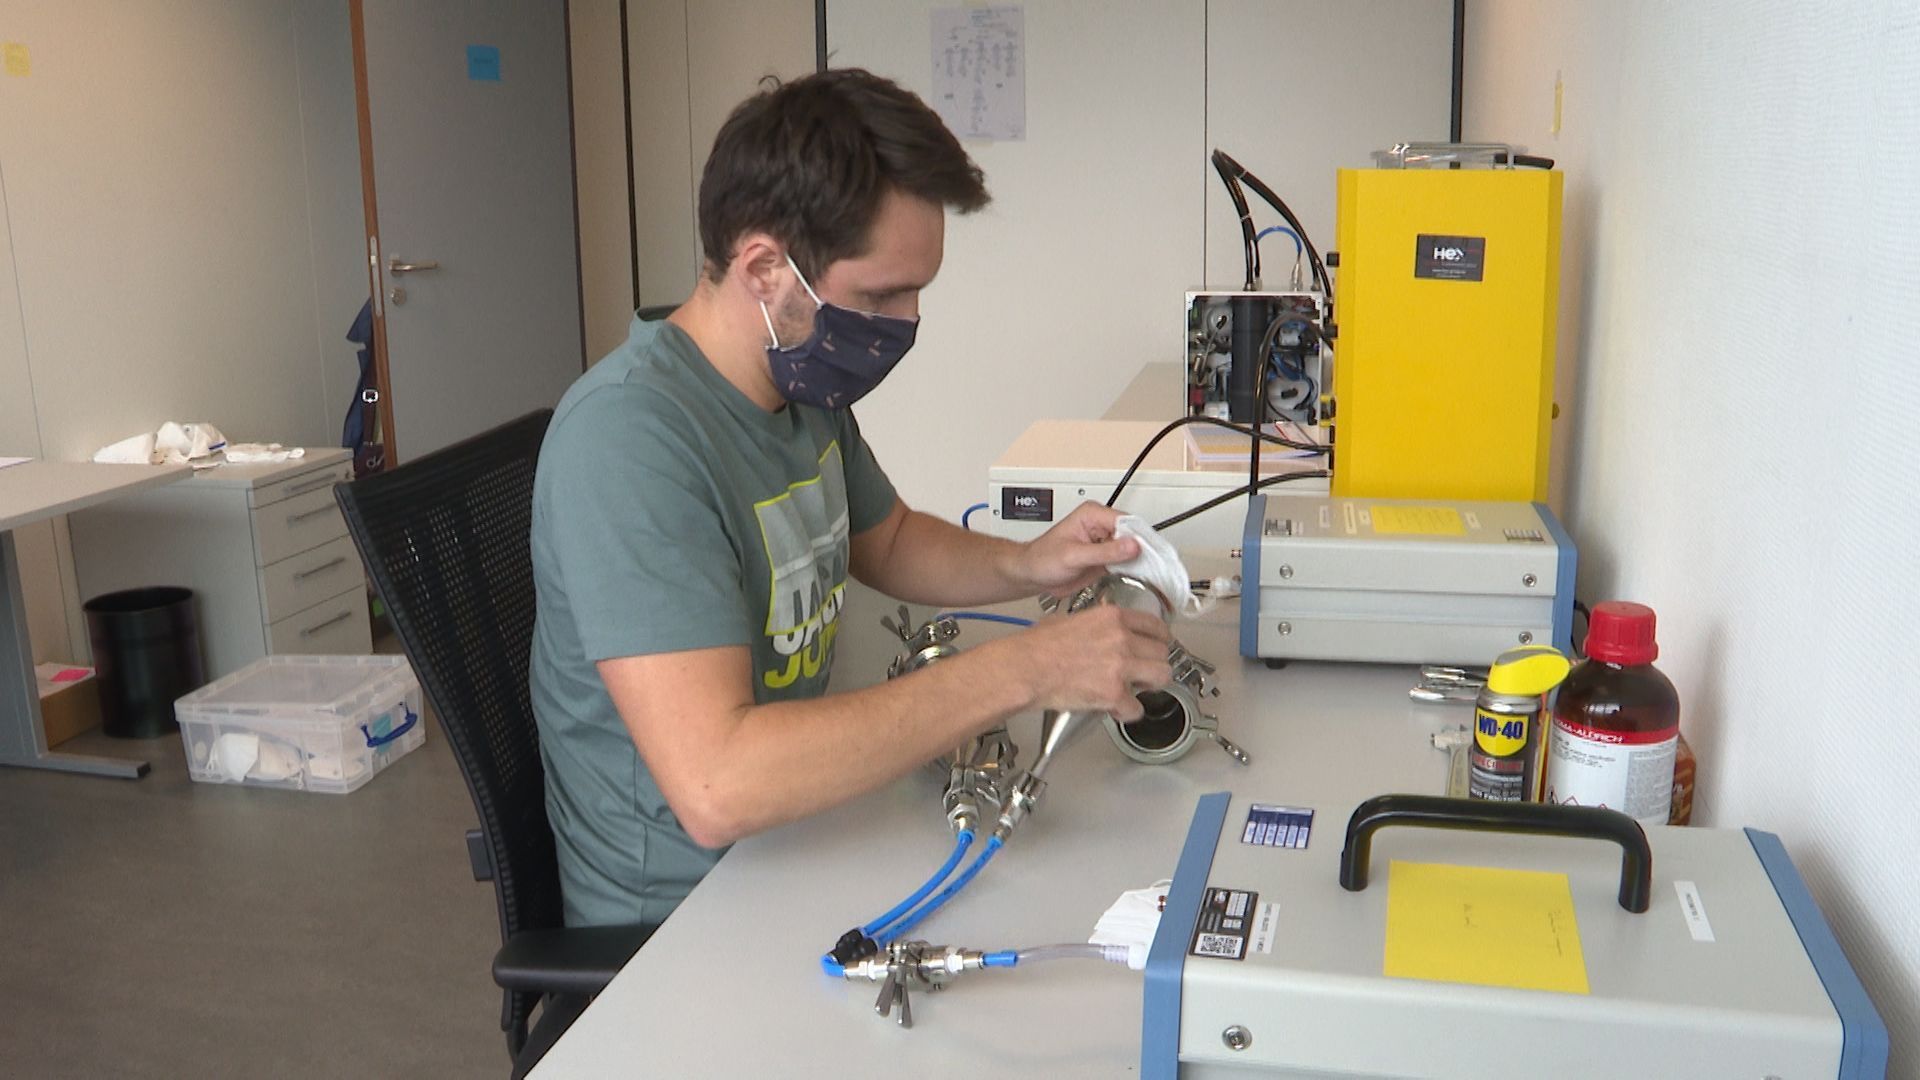 Le laboratoire HeX utilise un banc d'essai pour tester les filtres des masques